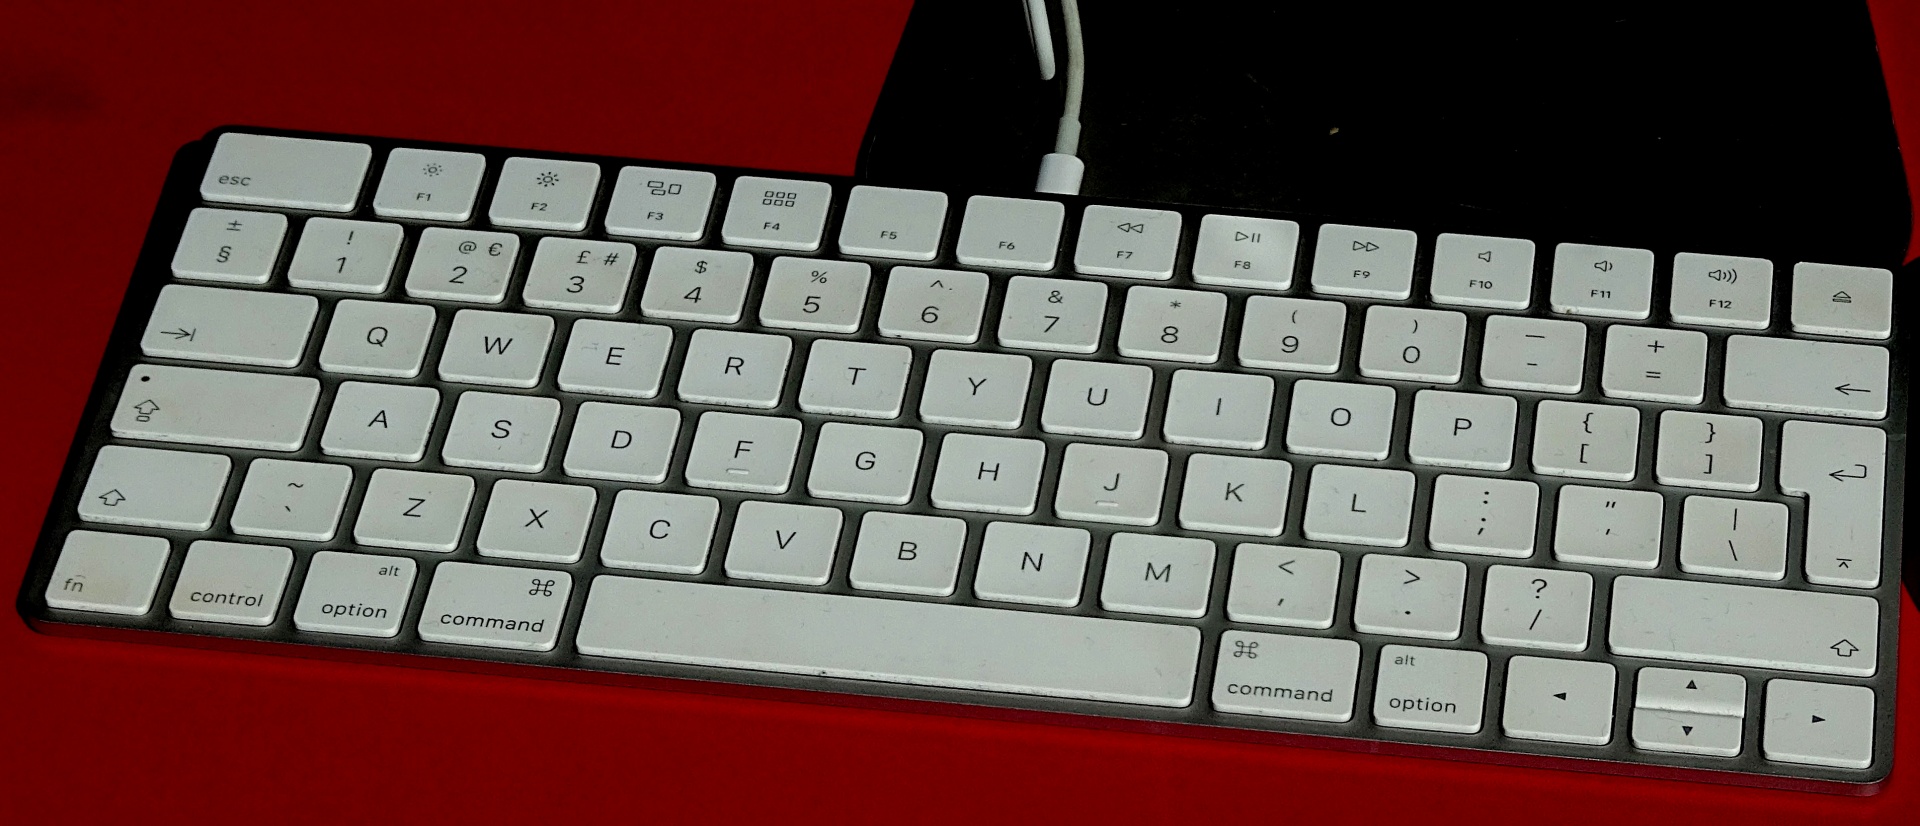 Las funciones que tiene un teclado se pueden utilizar en SAP ERP